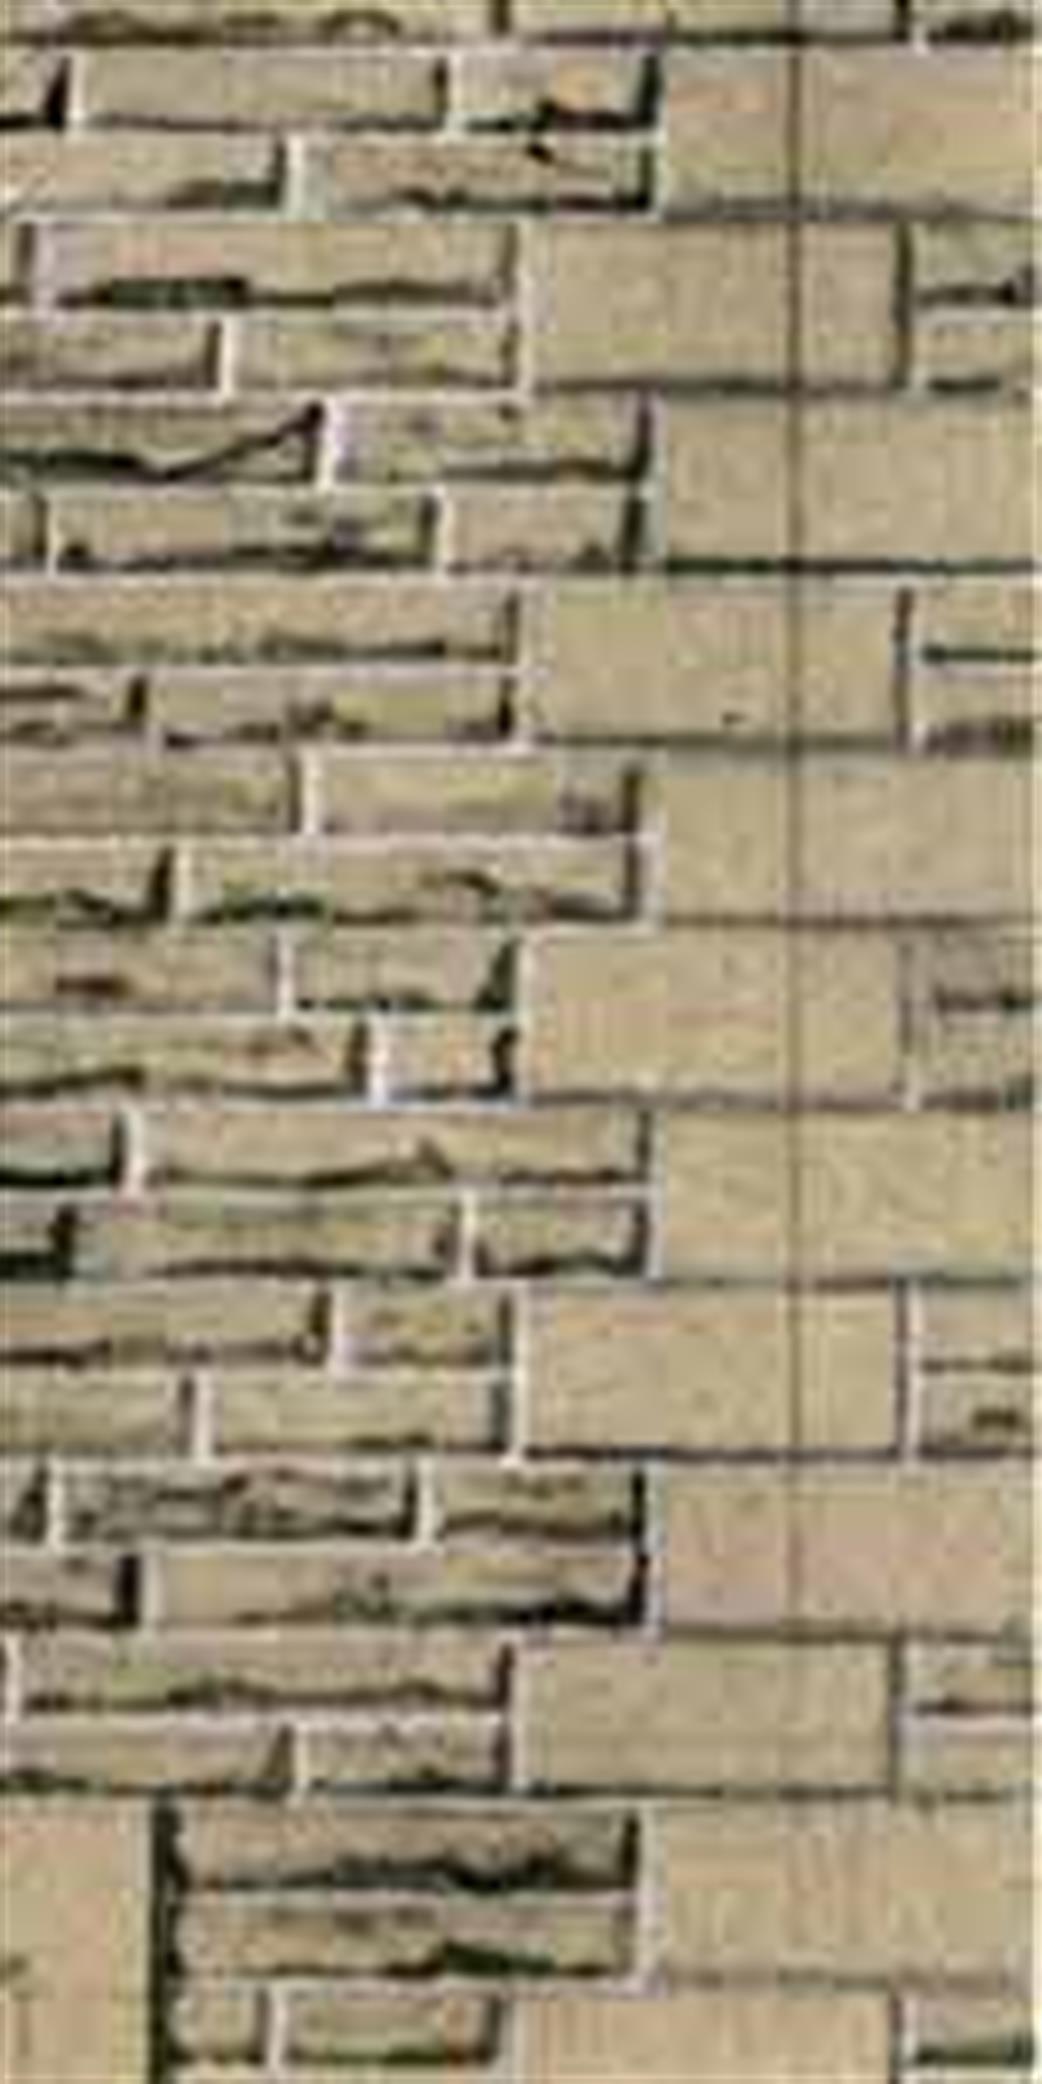 Superquick OO D10 Grey Sandstone Courses Walling (6 Sheets)